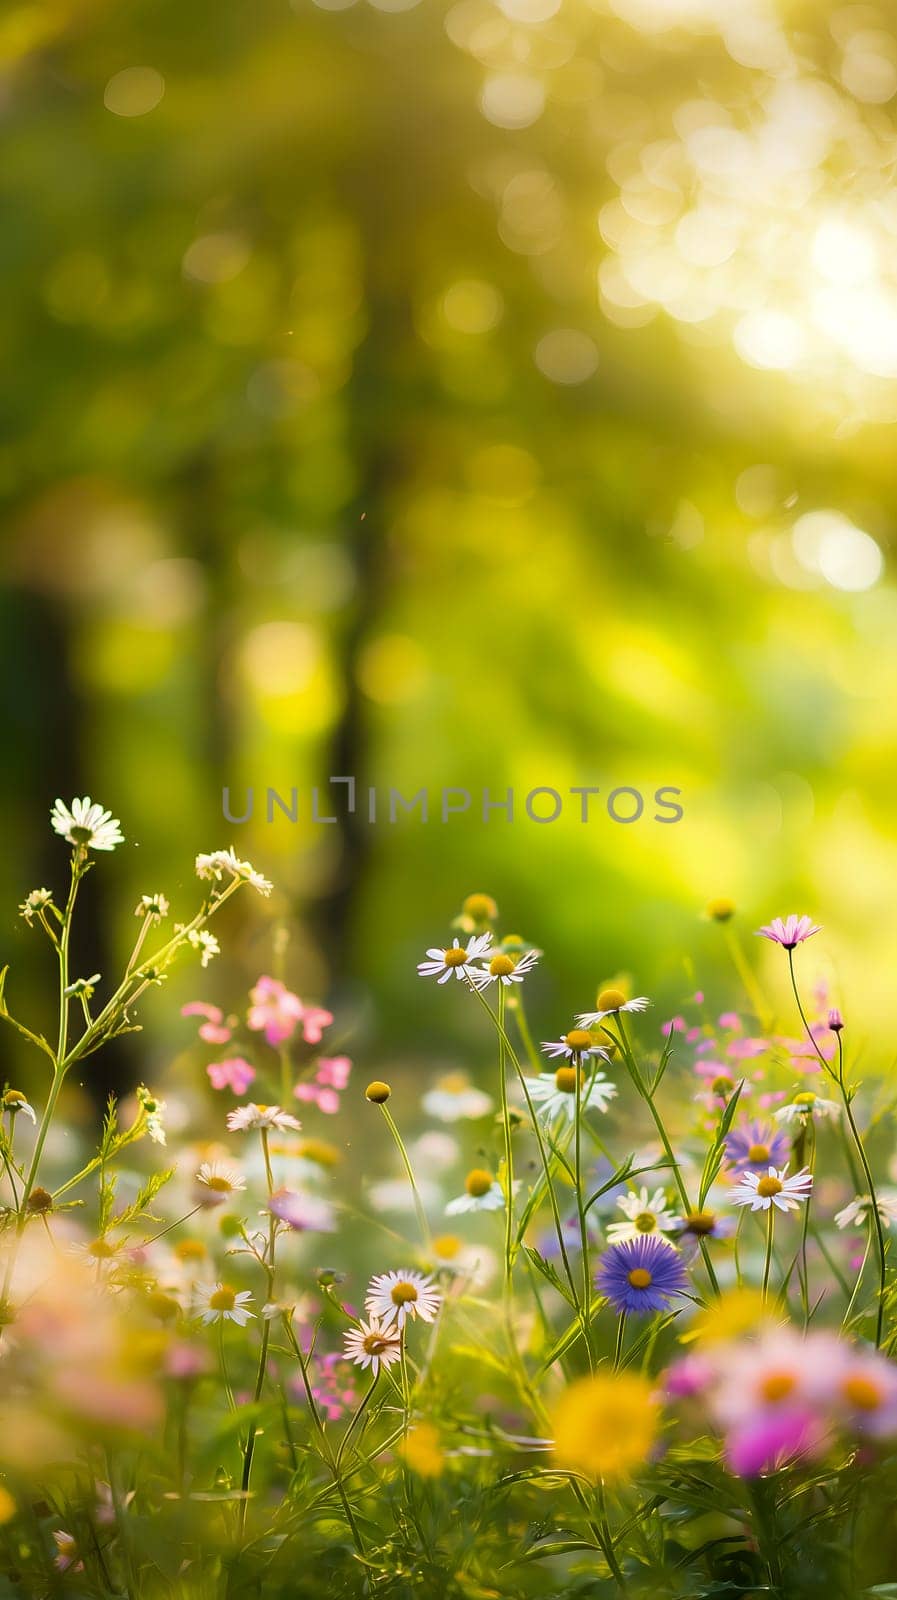 Sunlit Wildflowers in Springtime Bloom by chrisroll